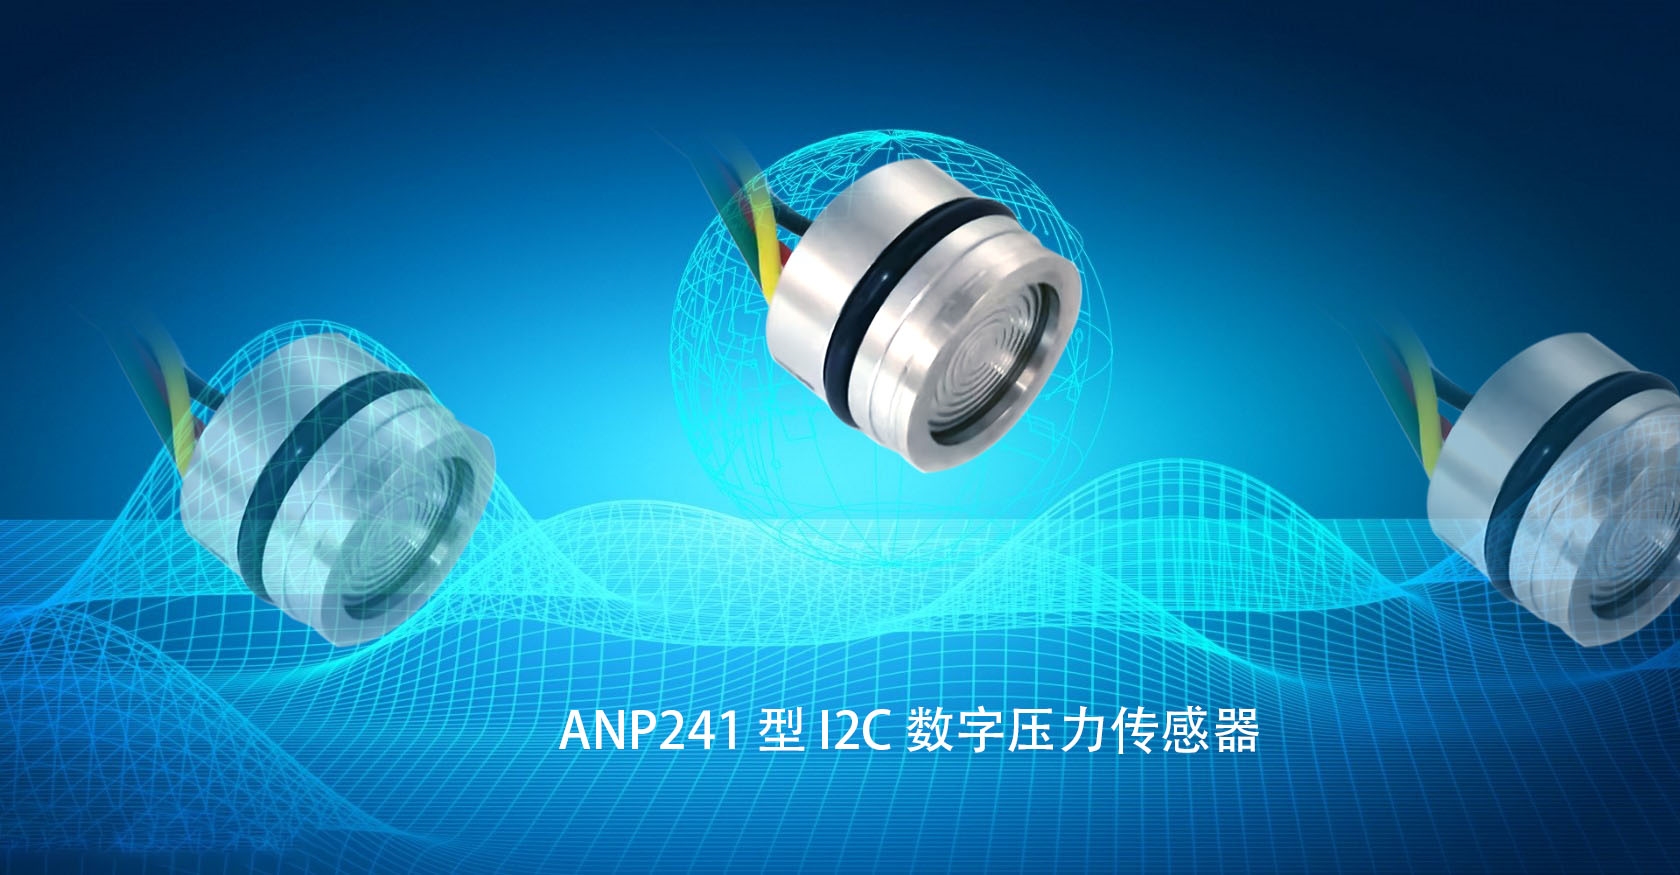 ANP241 型 I2C 数字压力传感器，高稳定、短交期、可定制